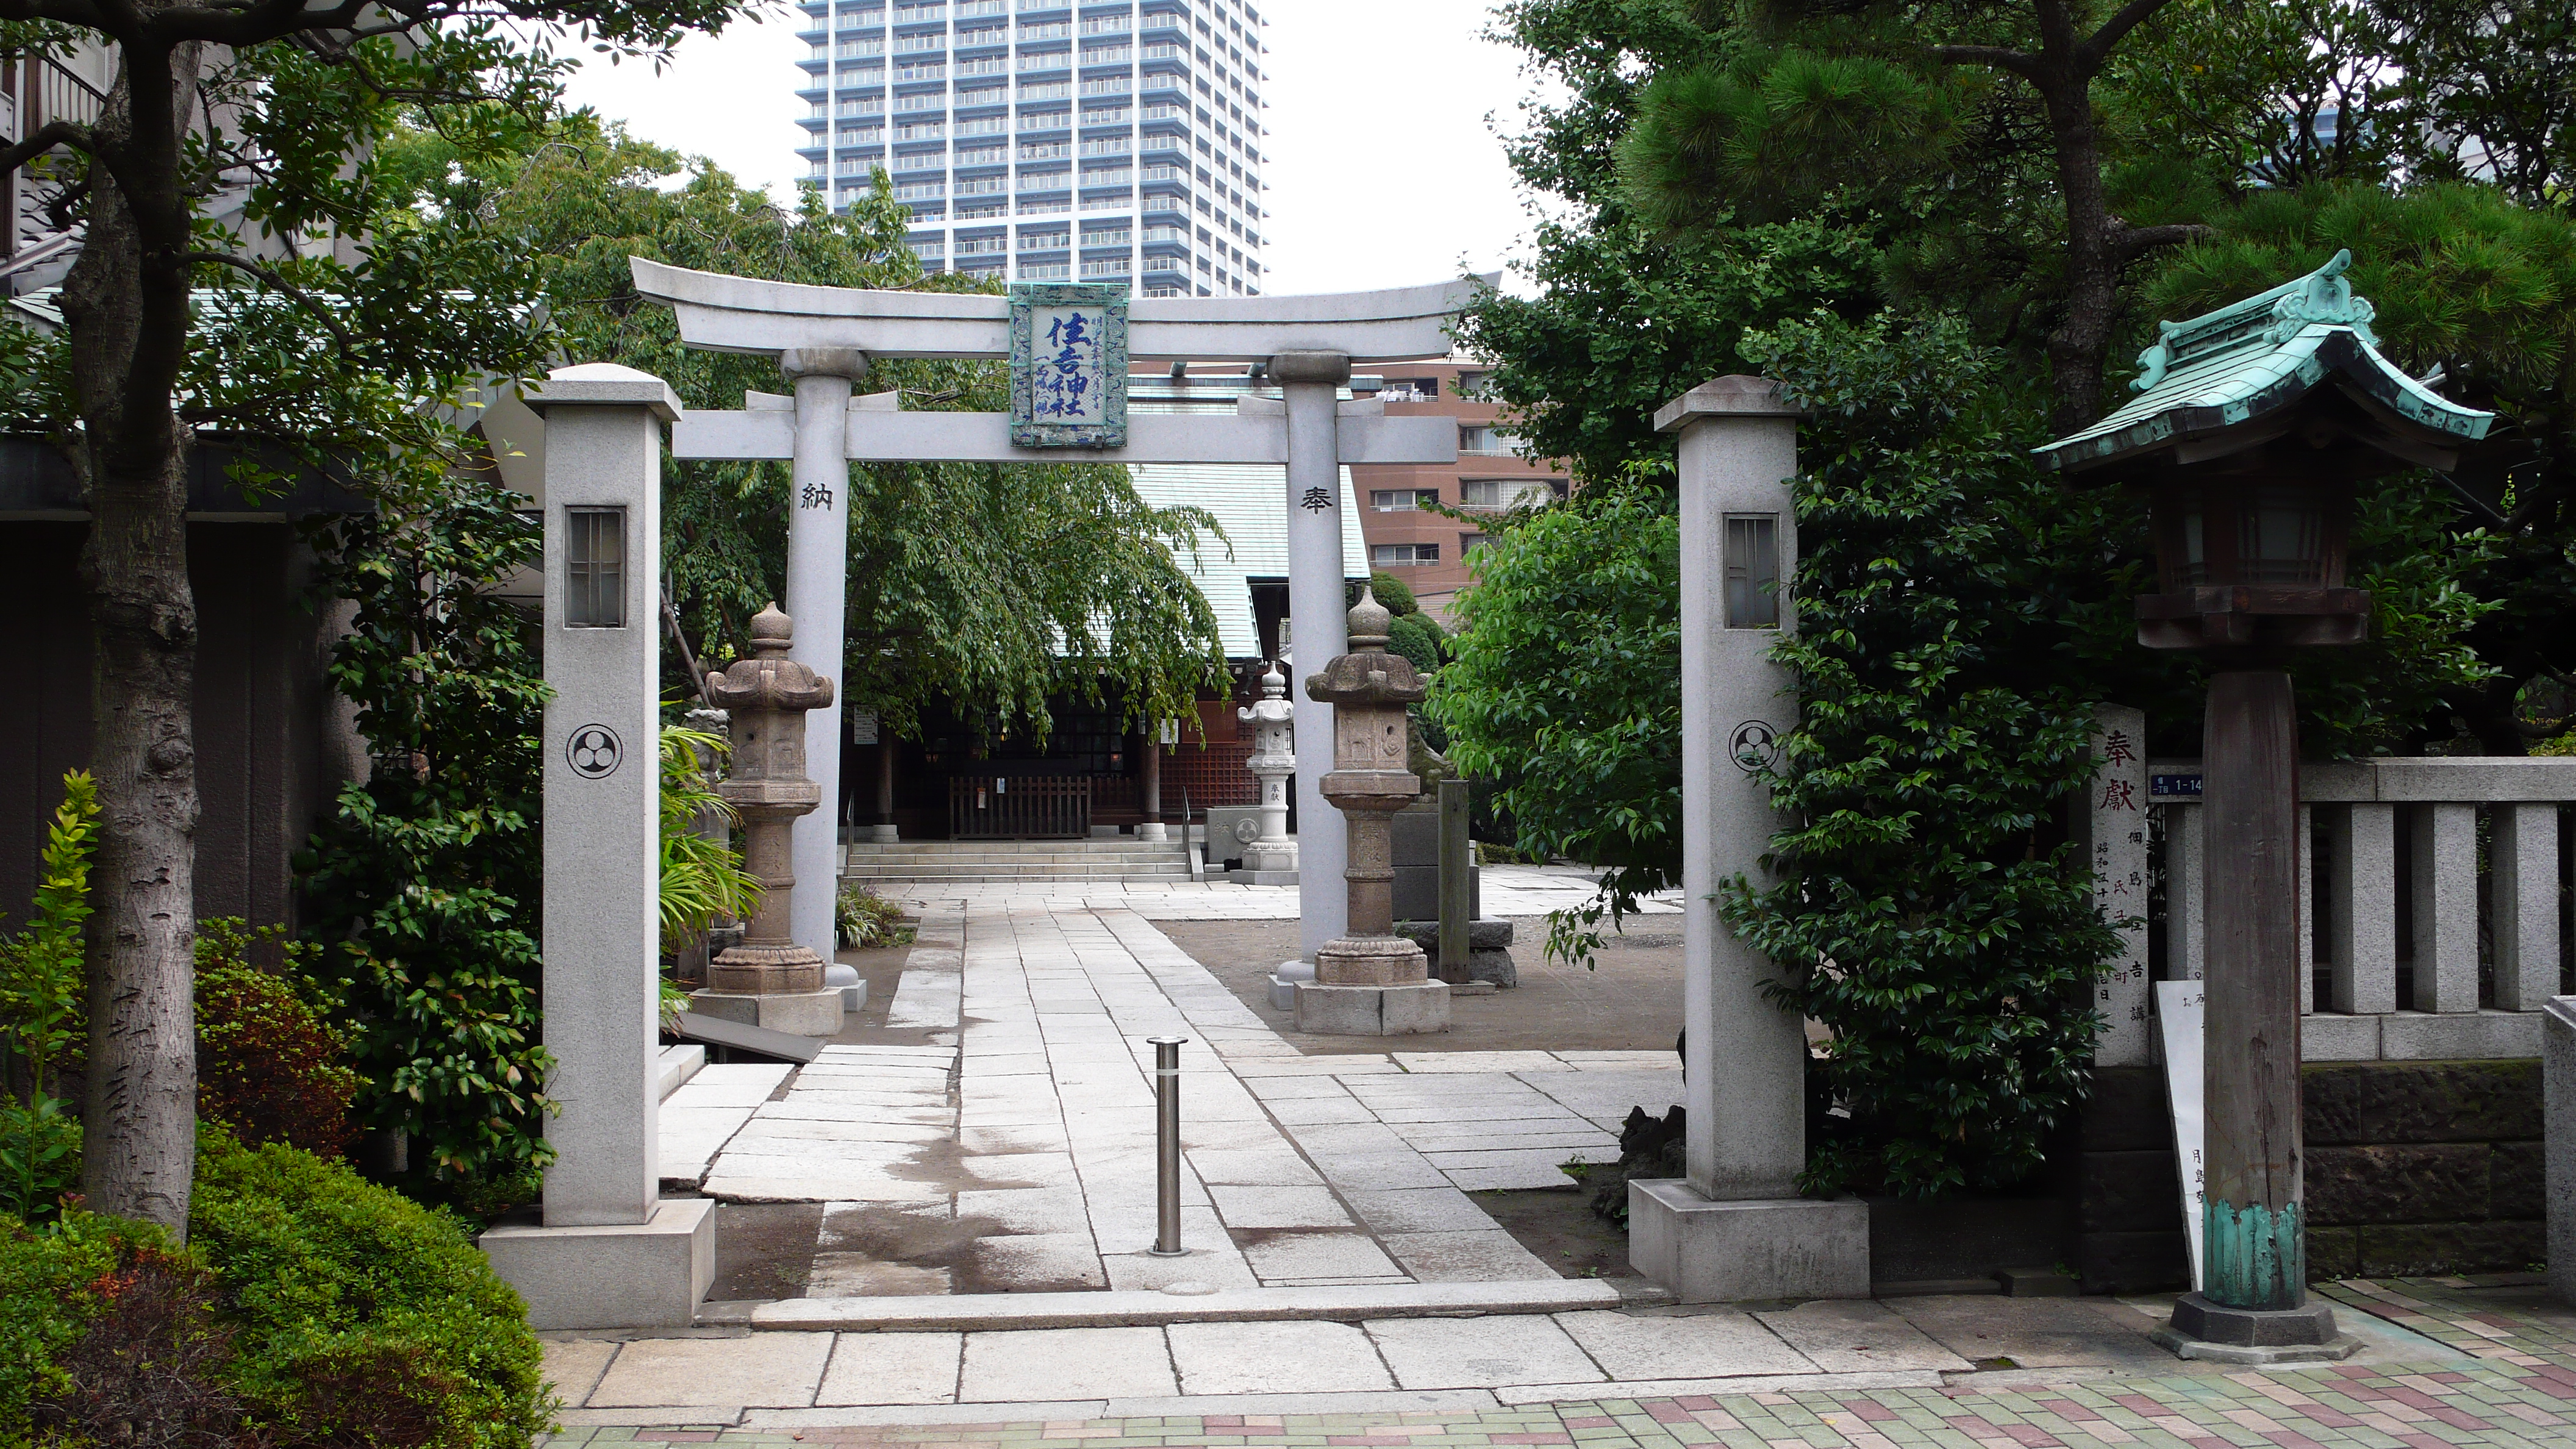 住吉神社 東京都中央区 Wikipedia